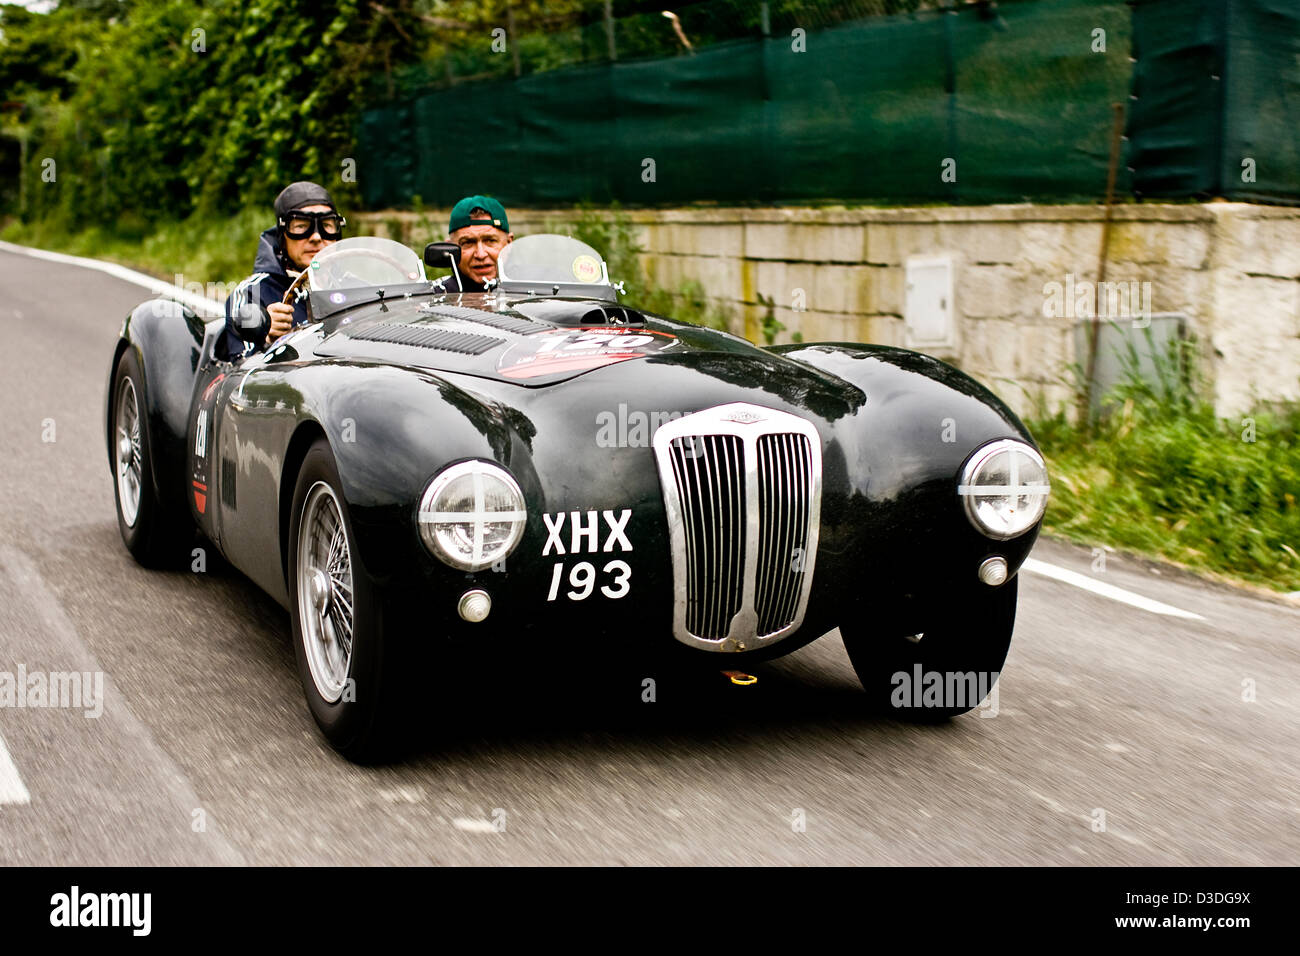 Voiture de collection sur la route, voiture de course Mille Miglia, Italie, 2008 Banque D'Images